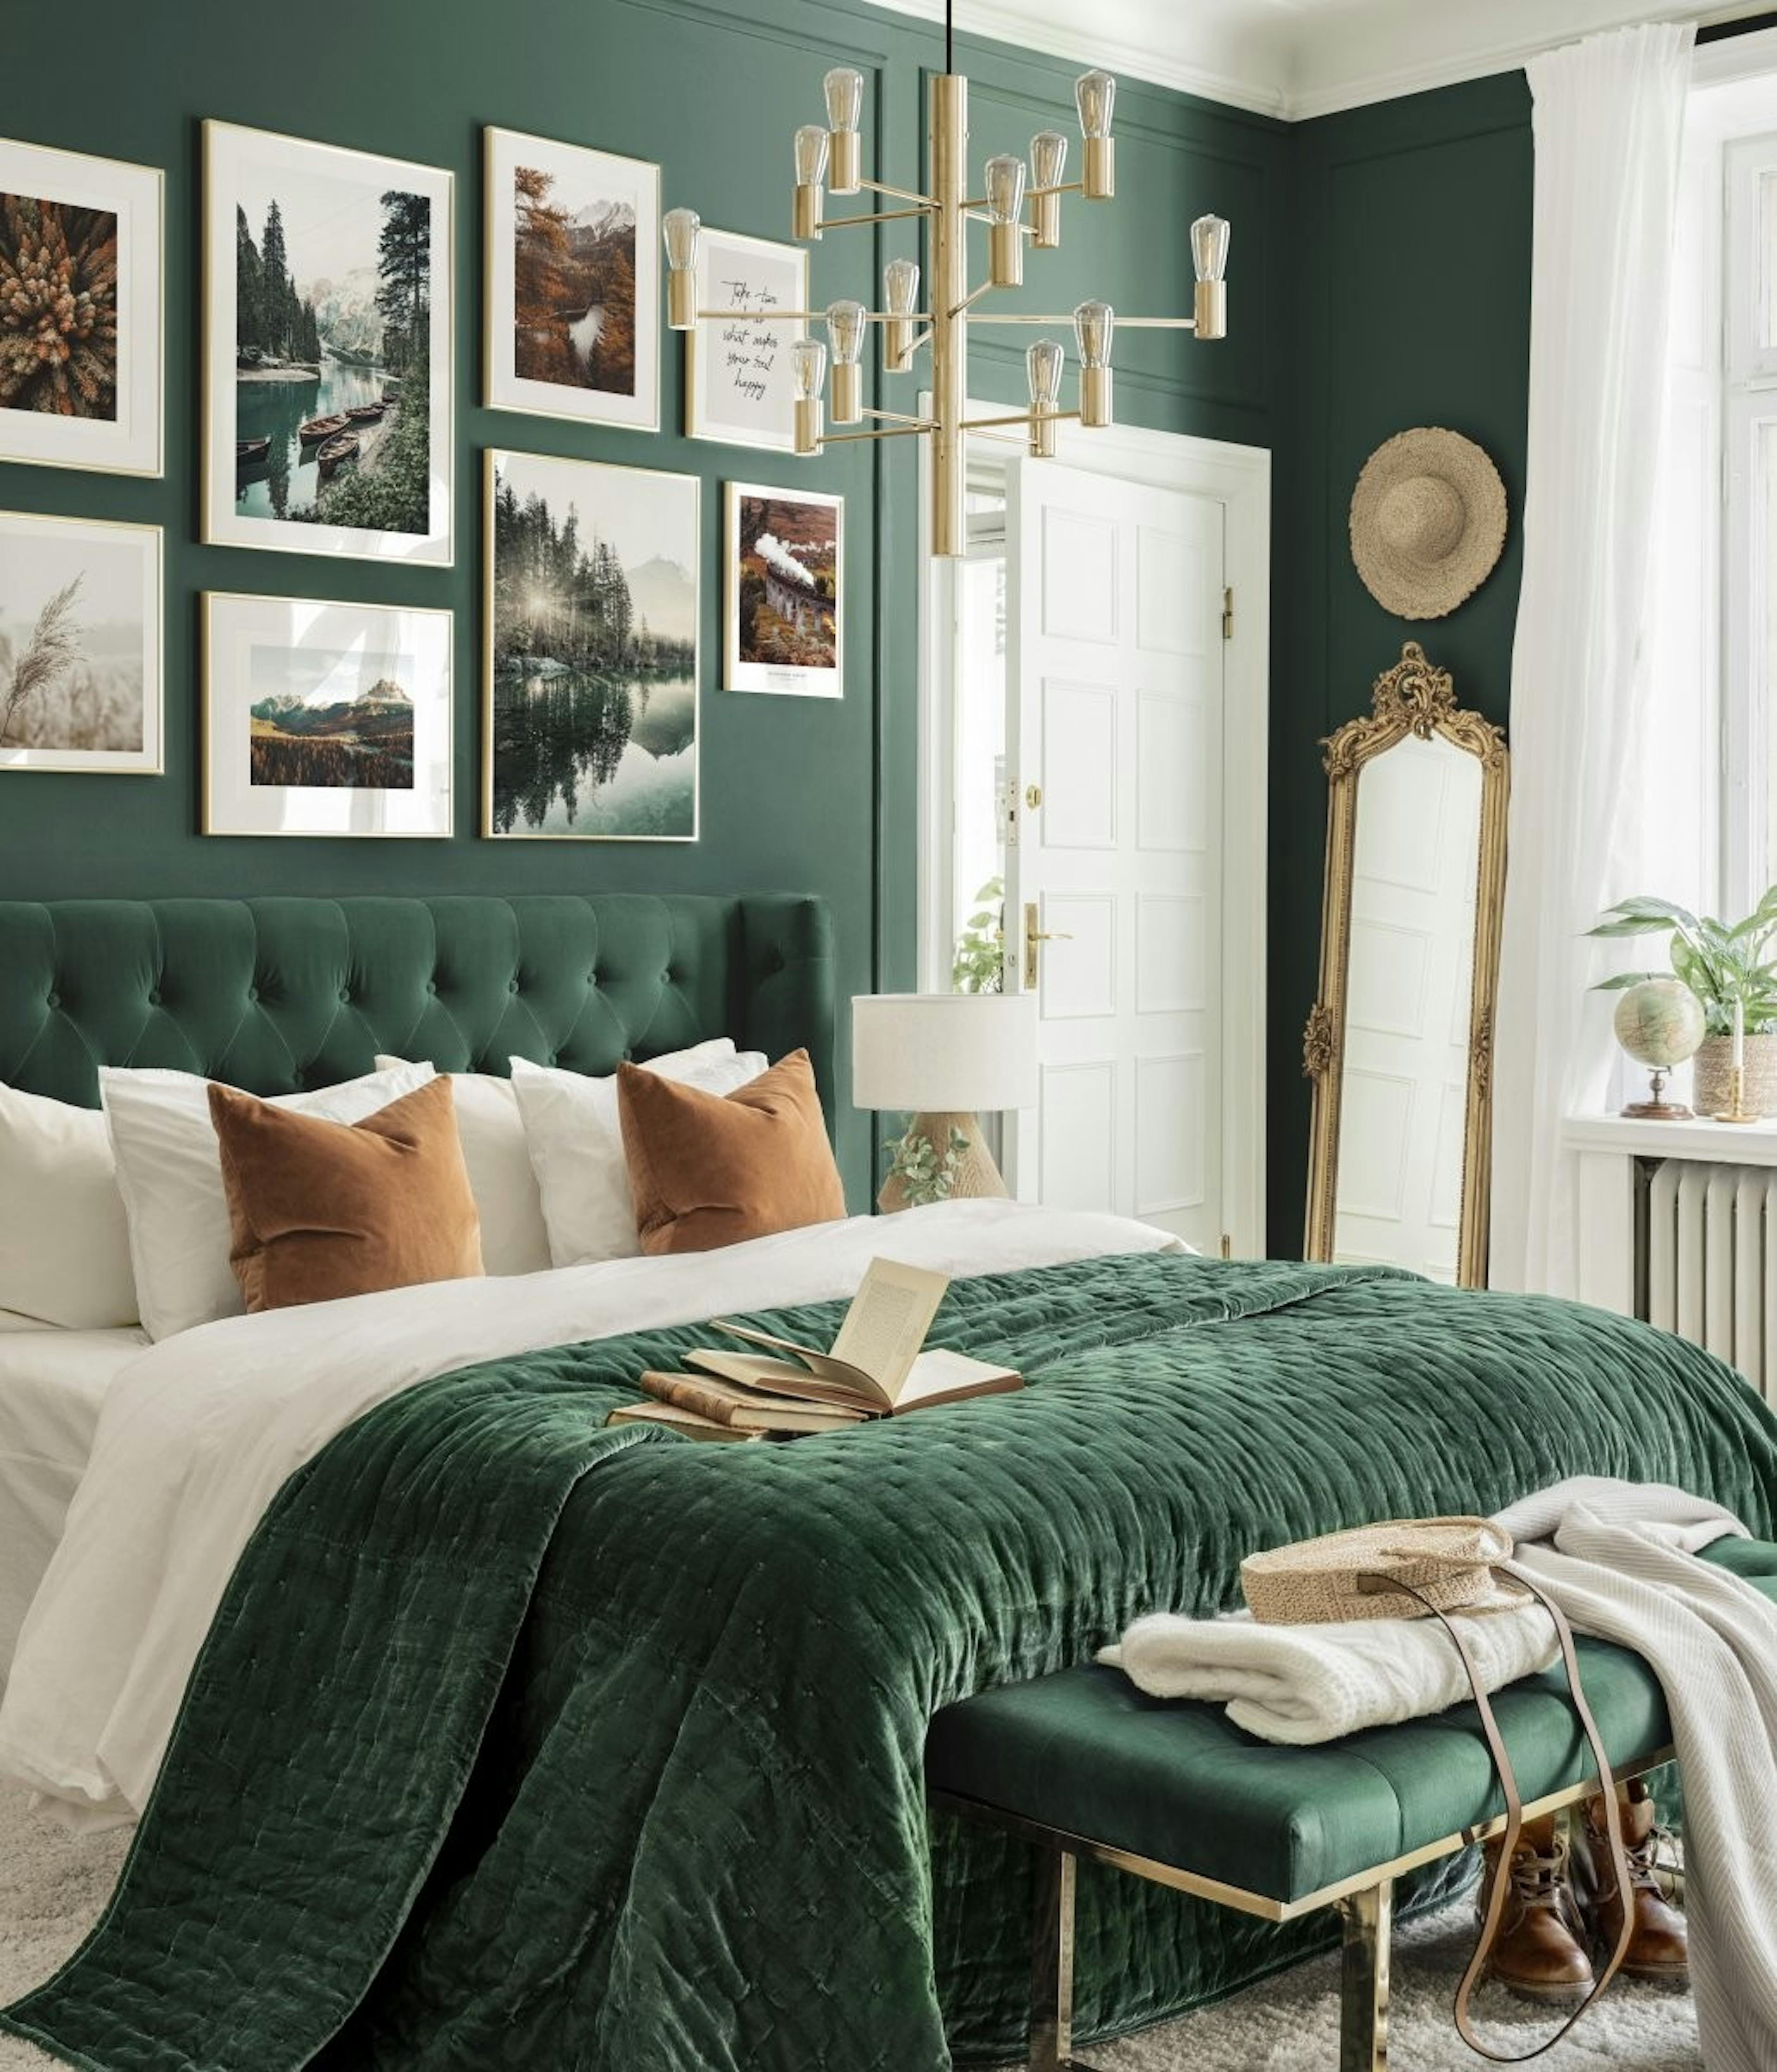 صور الطبيعة لجدار غرفة النوم الخضراء ولوحات صور المناظر الطبيعية مع إطارات ذهبية اللون